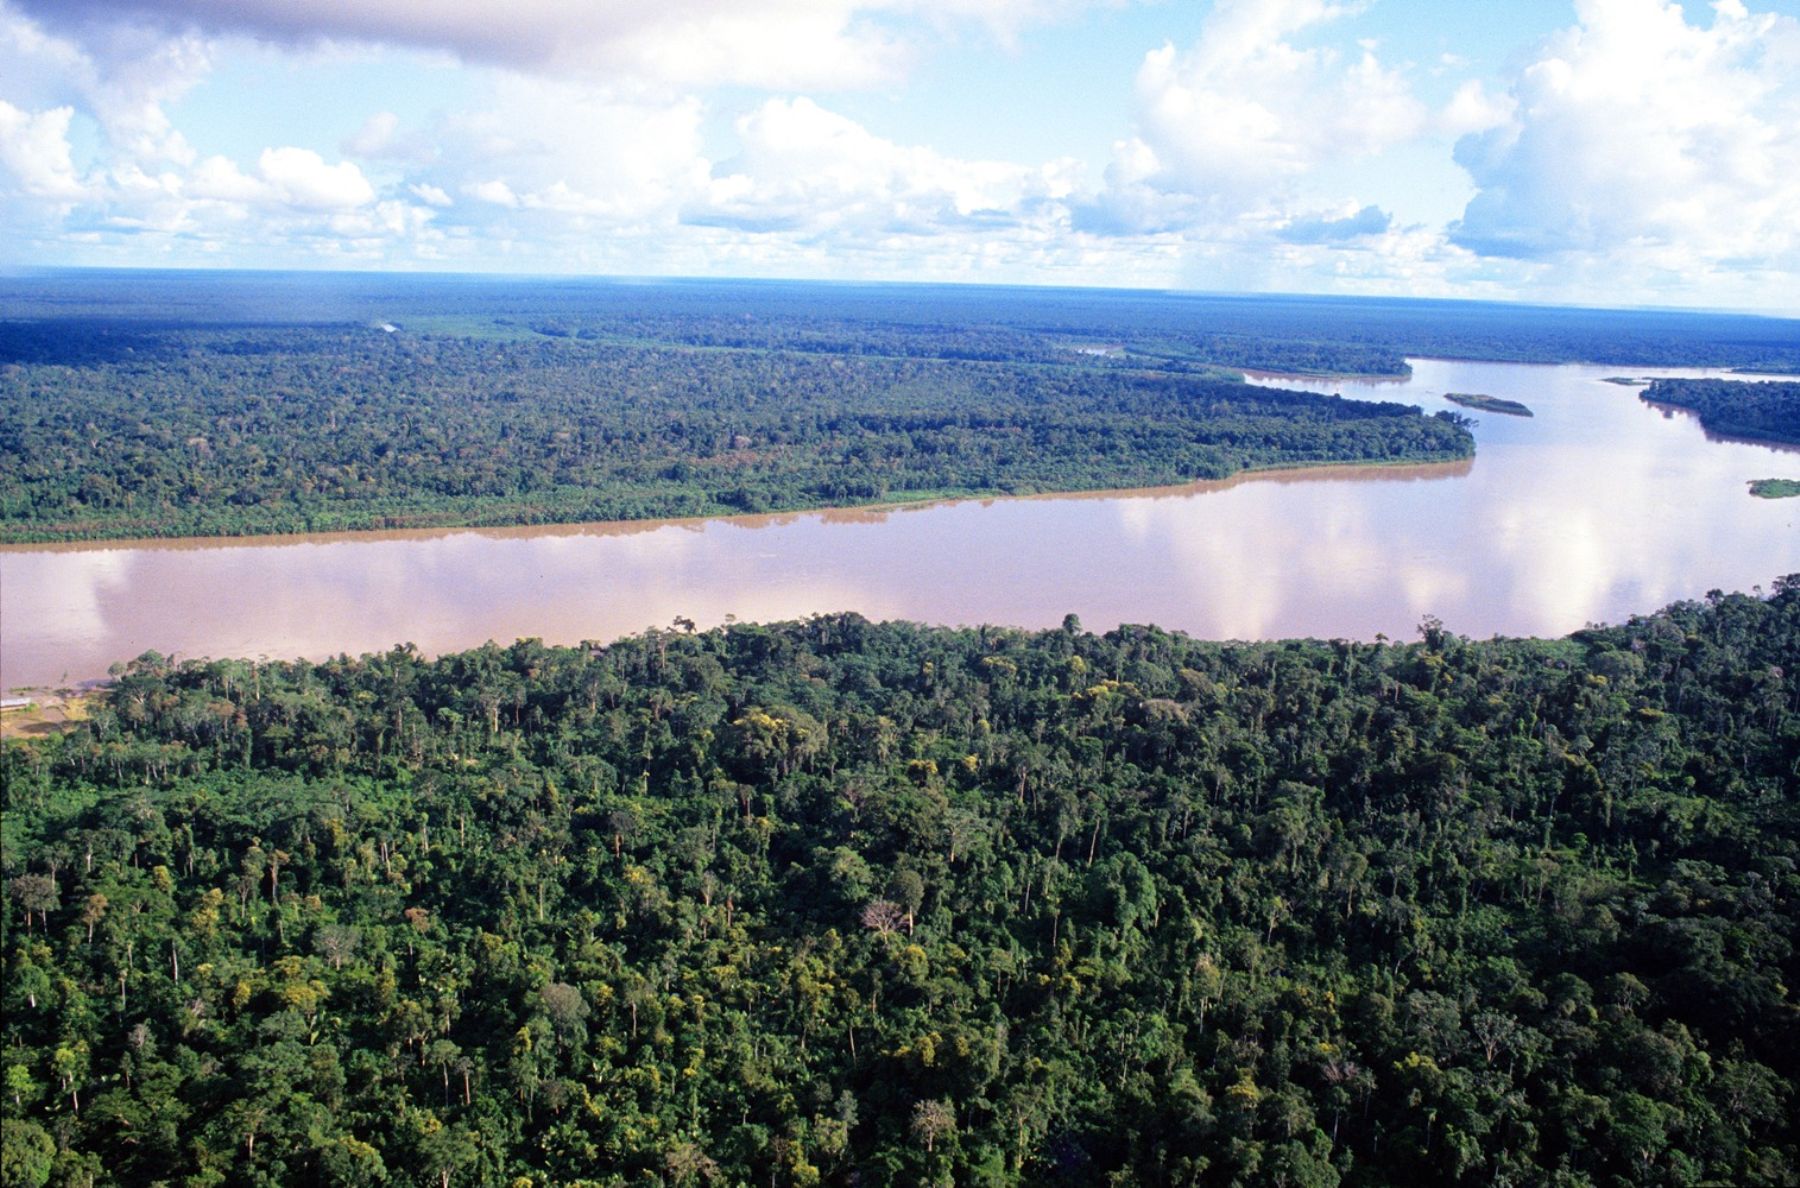 Revelan colusión sistémica en la gobernanza forestal peruana: ¿Quiénes son los responsables?